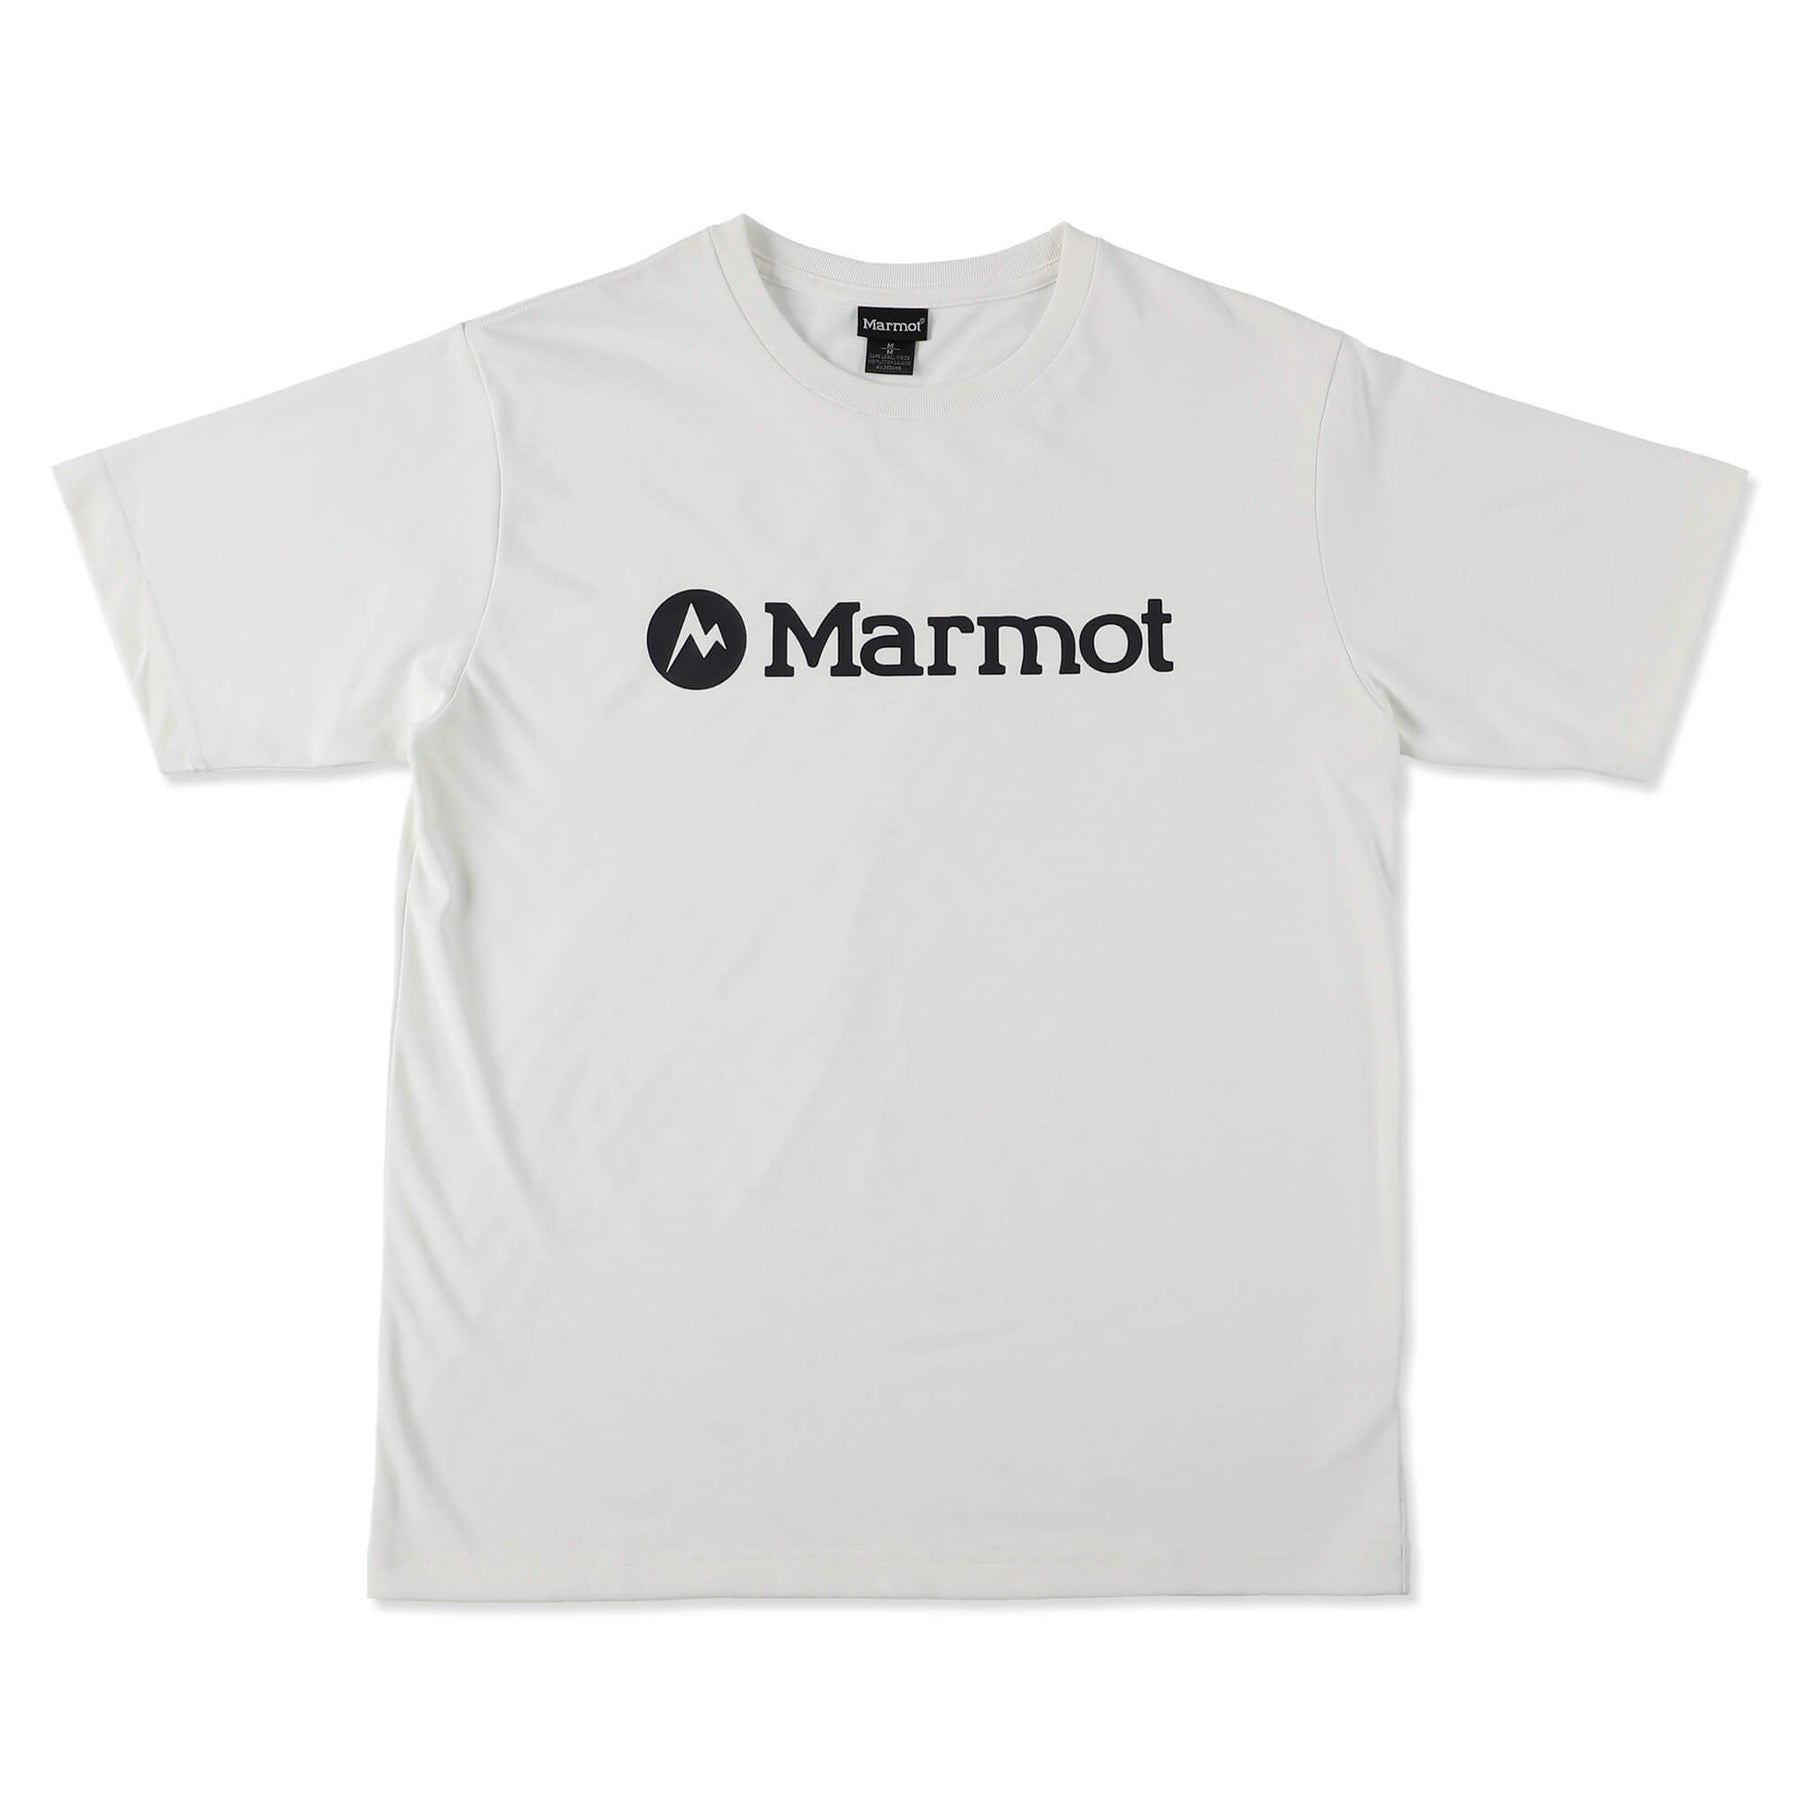 marmot マーモット メンズ Tシャツ M 半額SALE   600円引き ...